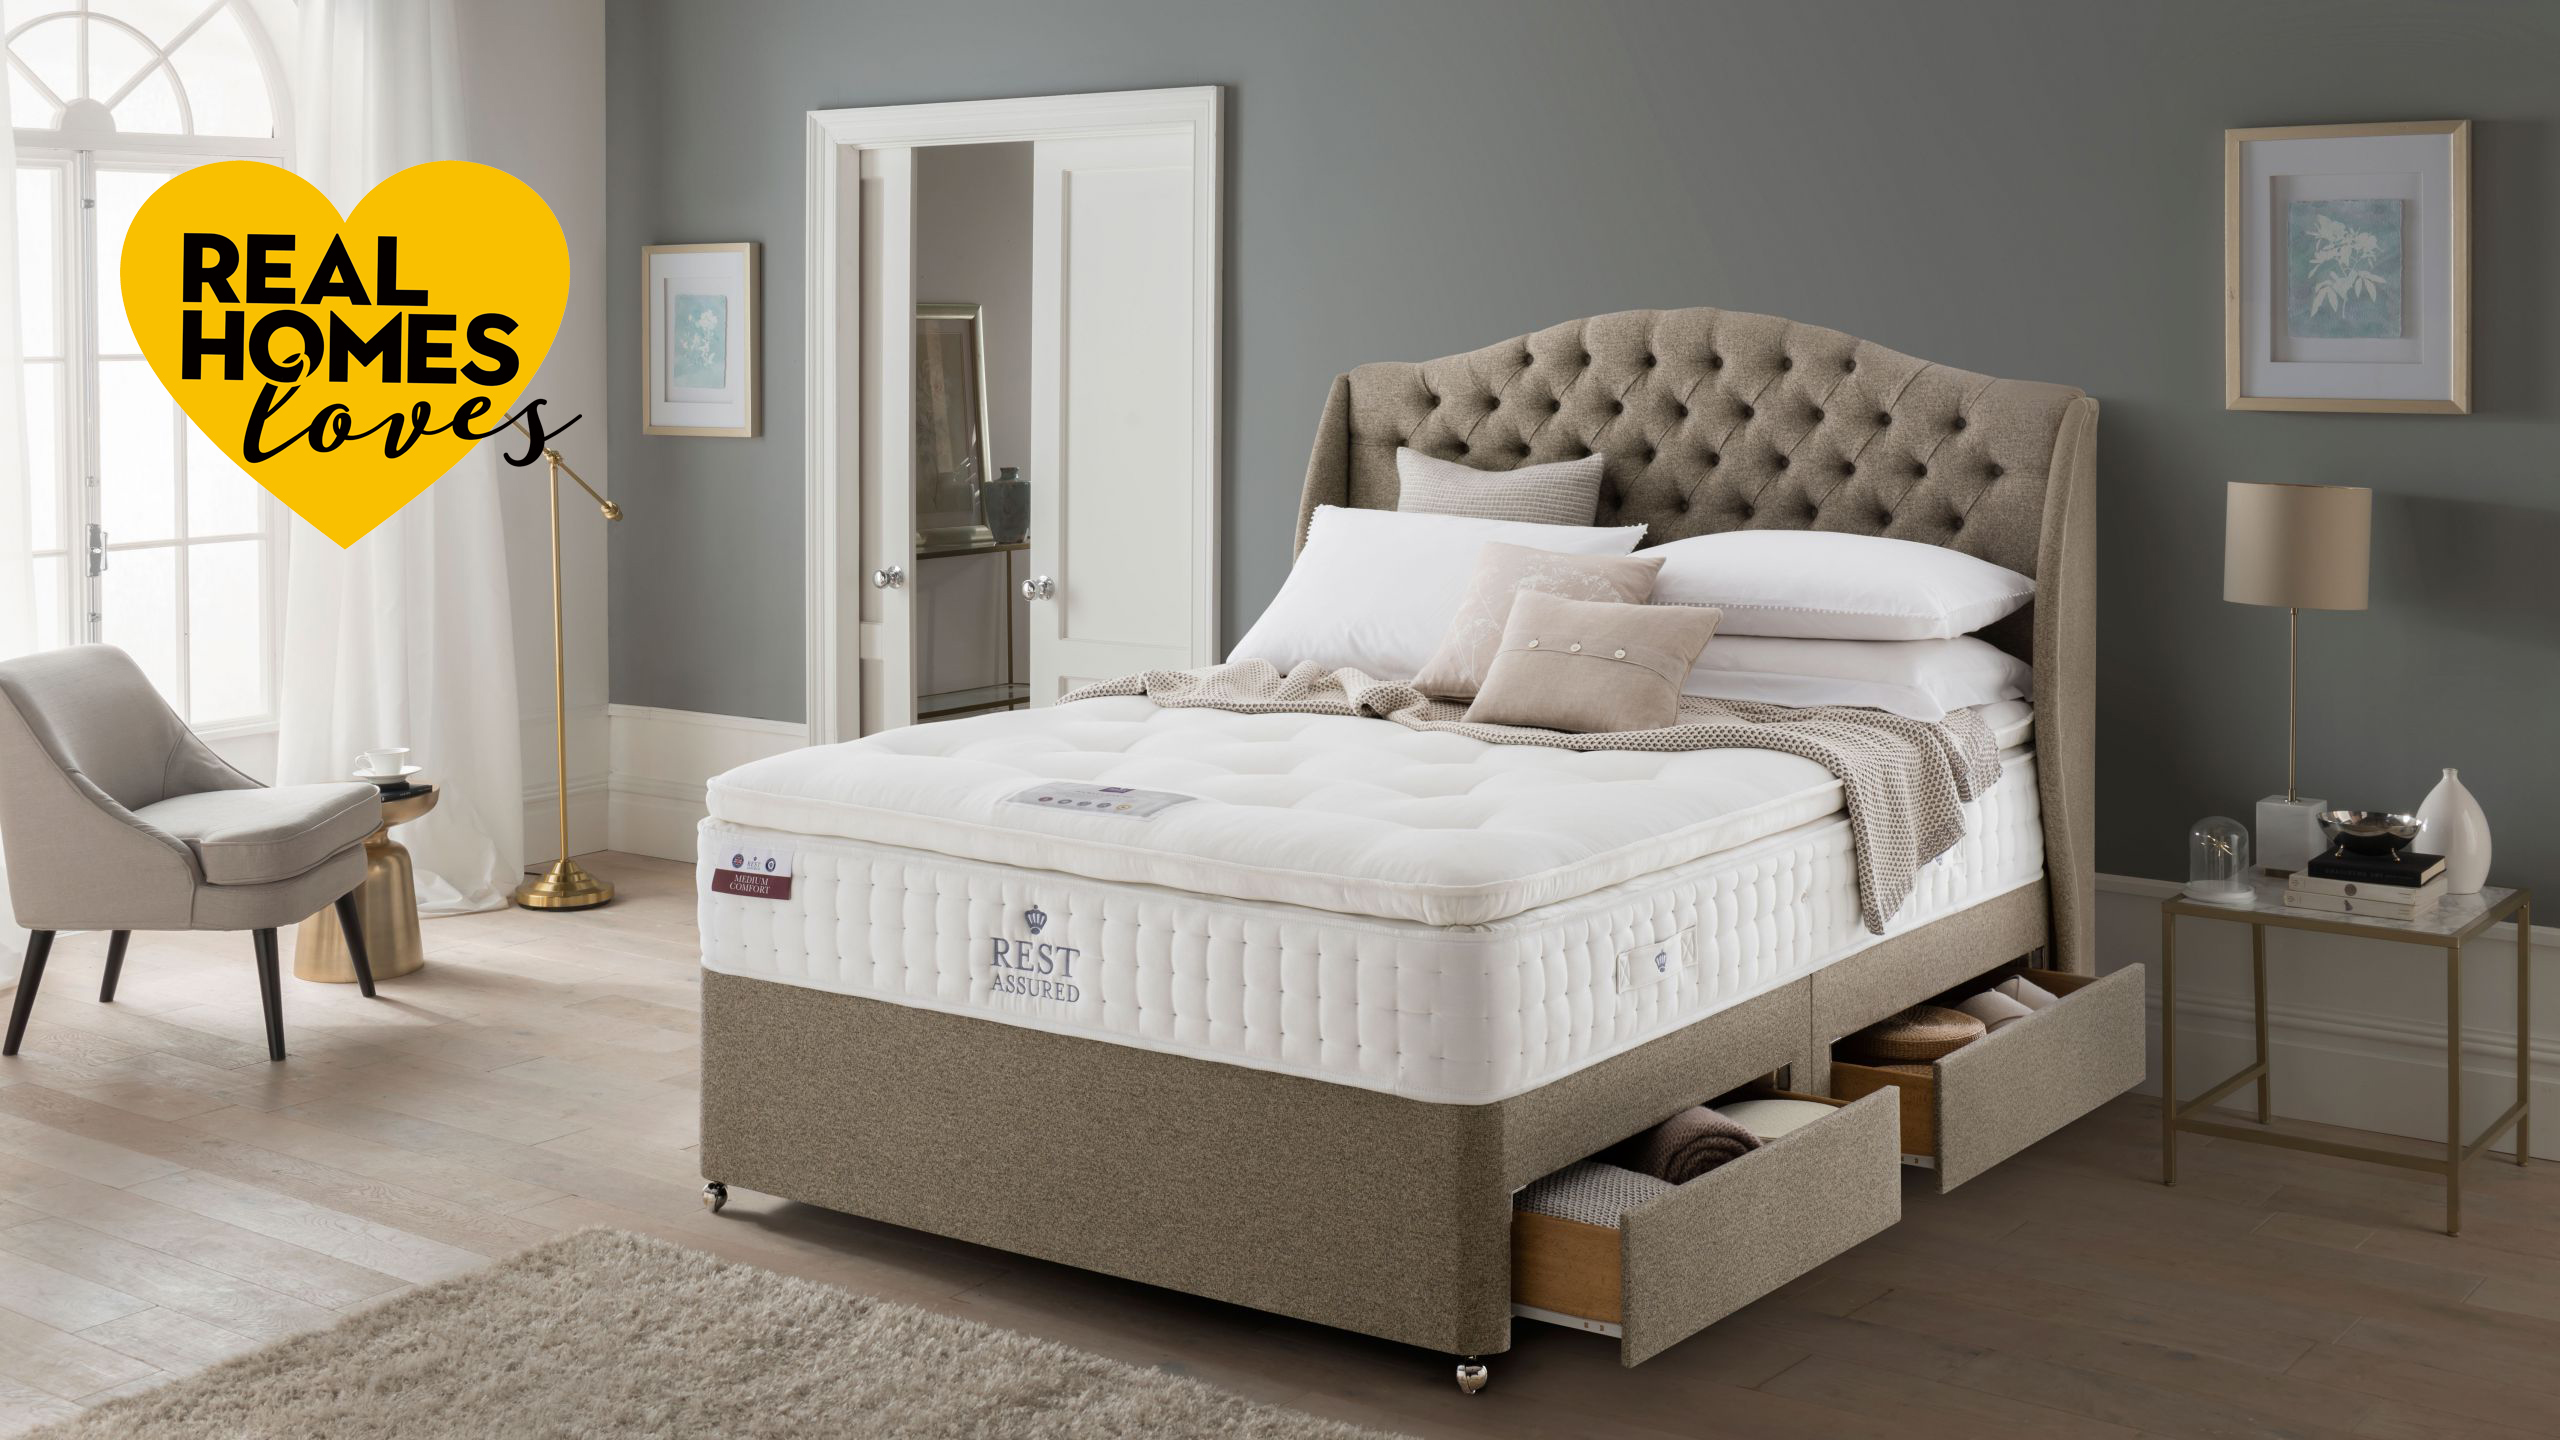 rest assured mattress review